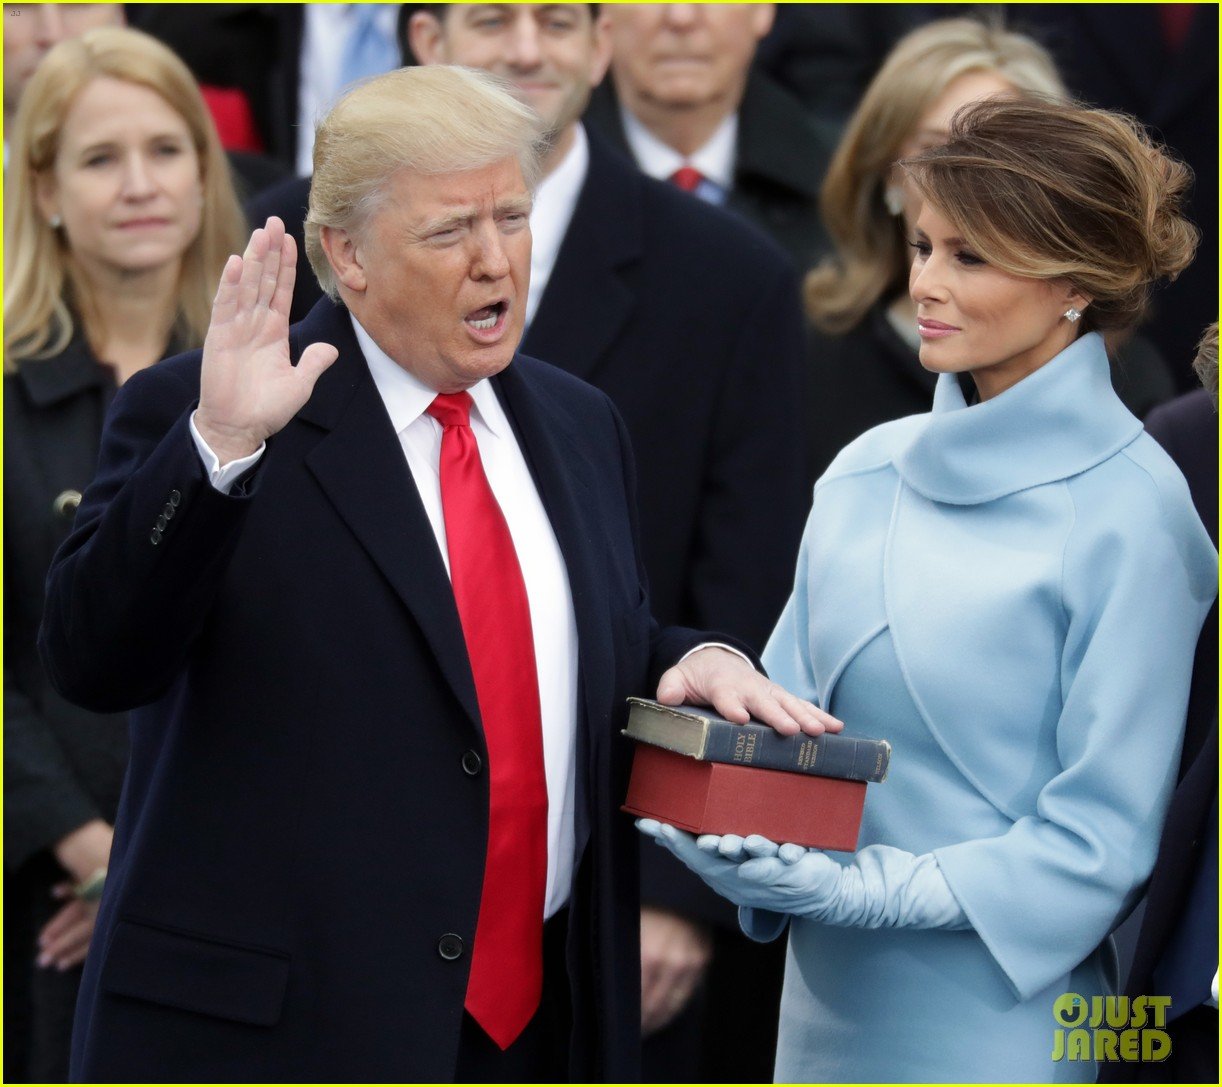 http://cdn02.cdn.justjared.com/wp-content/uploads/2017/01/trump-speeche/donald-trump-inauguration-speech-26.jpg